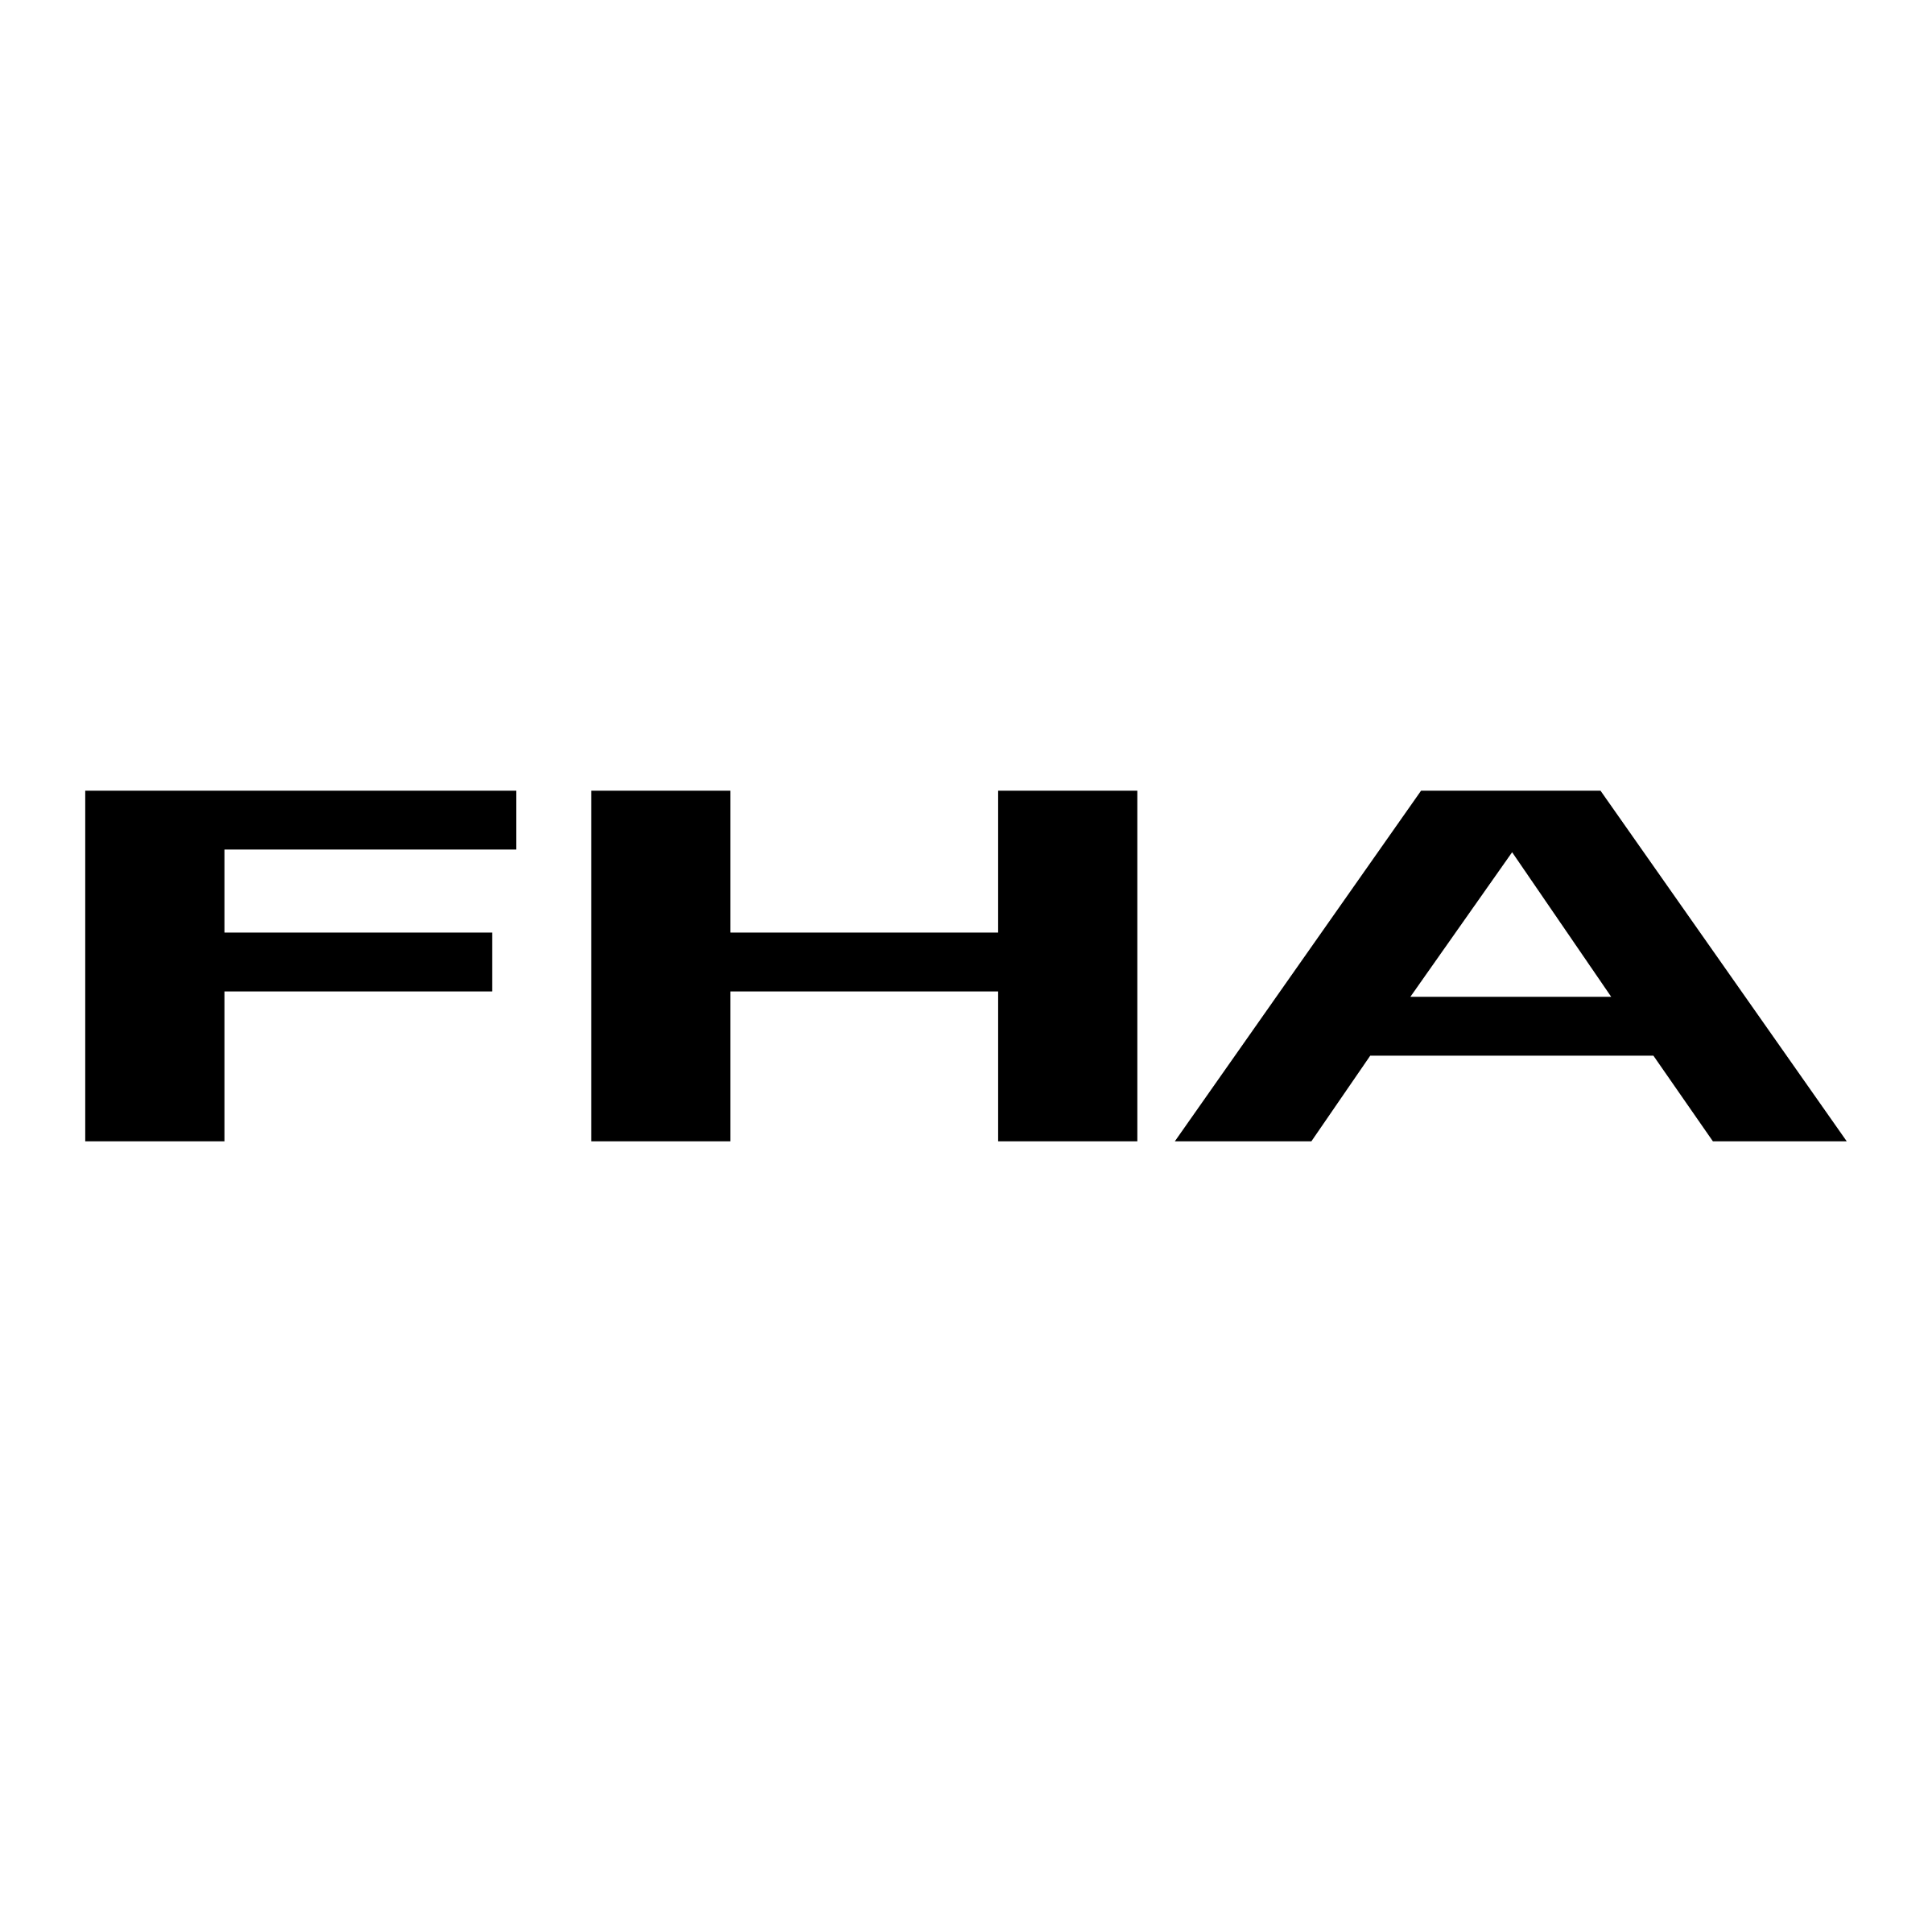 FHA Logo - FHA Logo PNG Transparent & SVG Vector